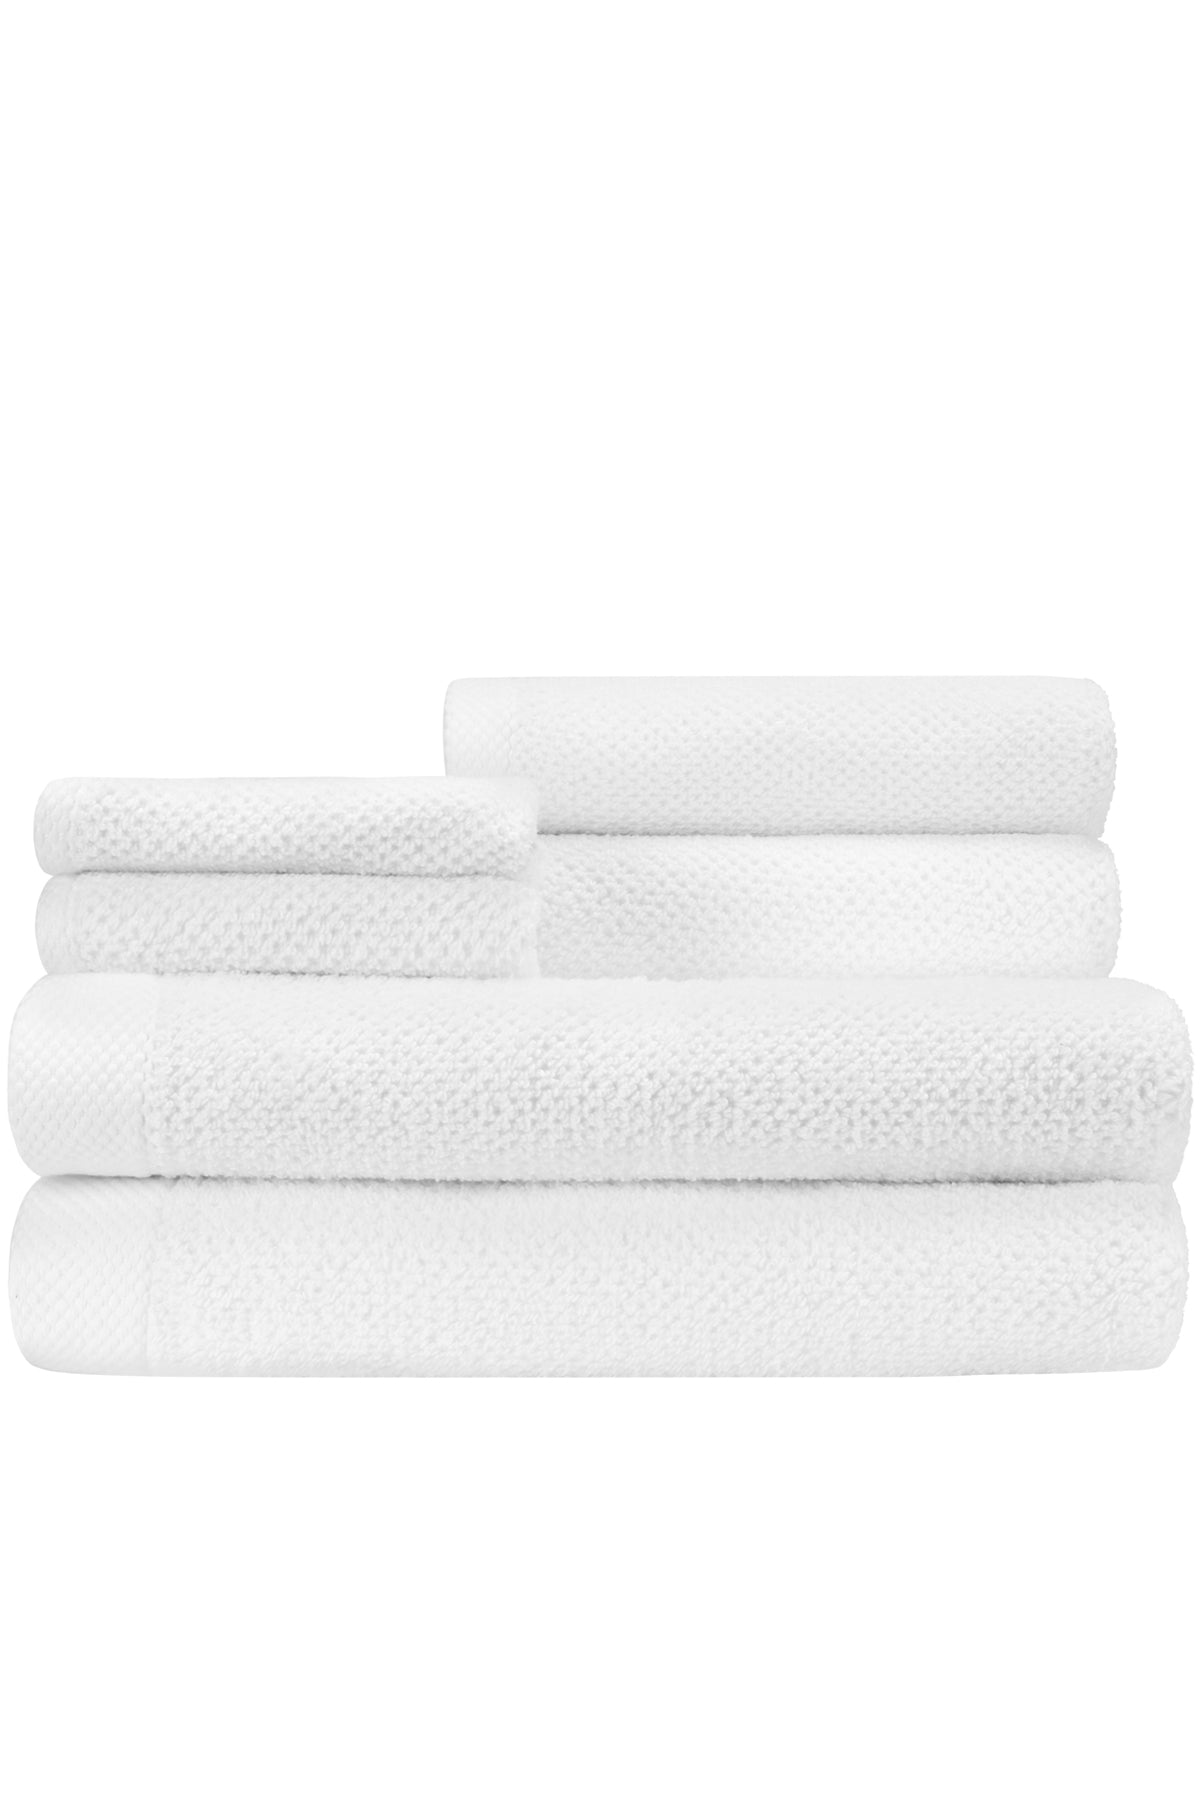 Adele OVERSIZED Bamboo Towel : Caro Home Bath & Bedding Collection – CARO  HOME